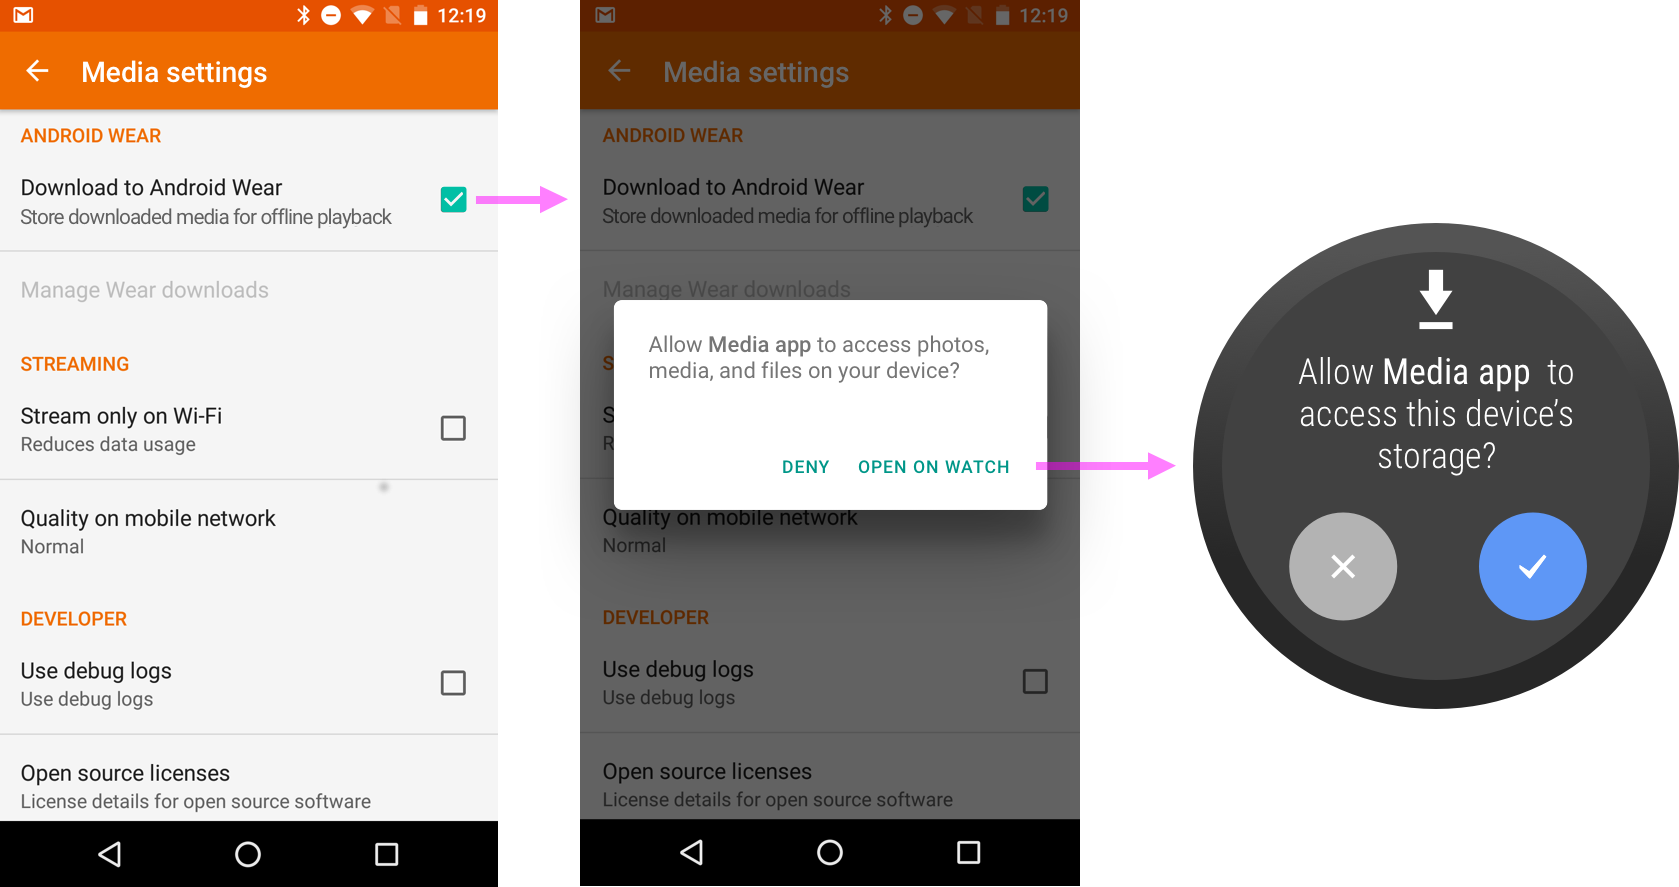 O app para smartphone direciona o usuário ao wearable para que ele conceda a permissão.